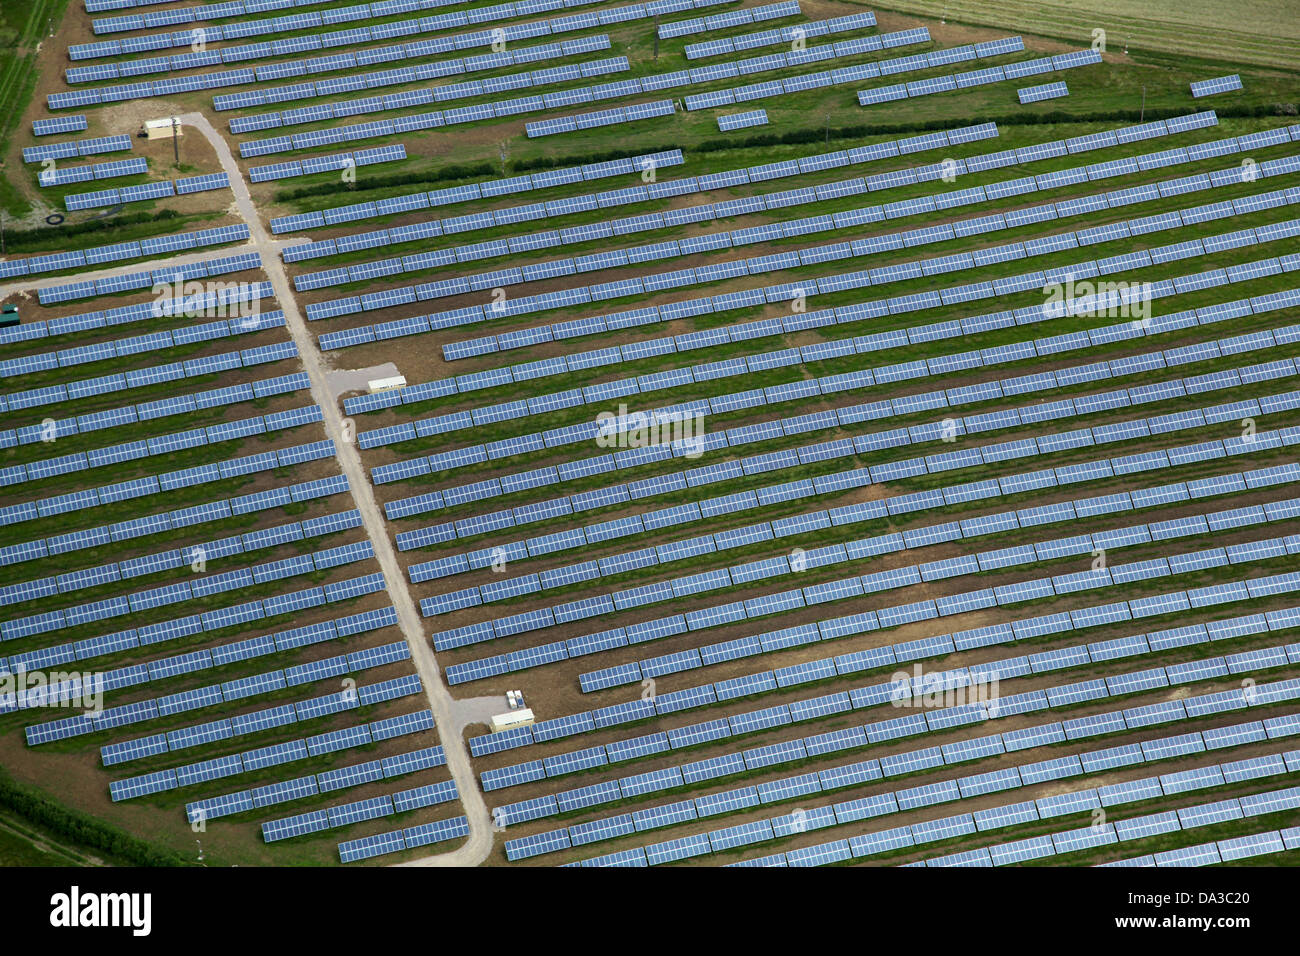 Vue aérienne d'une ferme solaire - un champ de panneaux solaires Banque D'Images